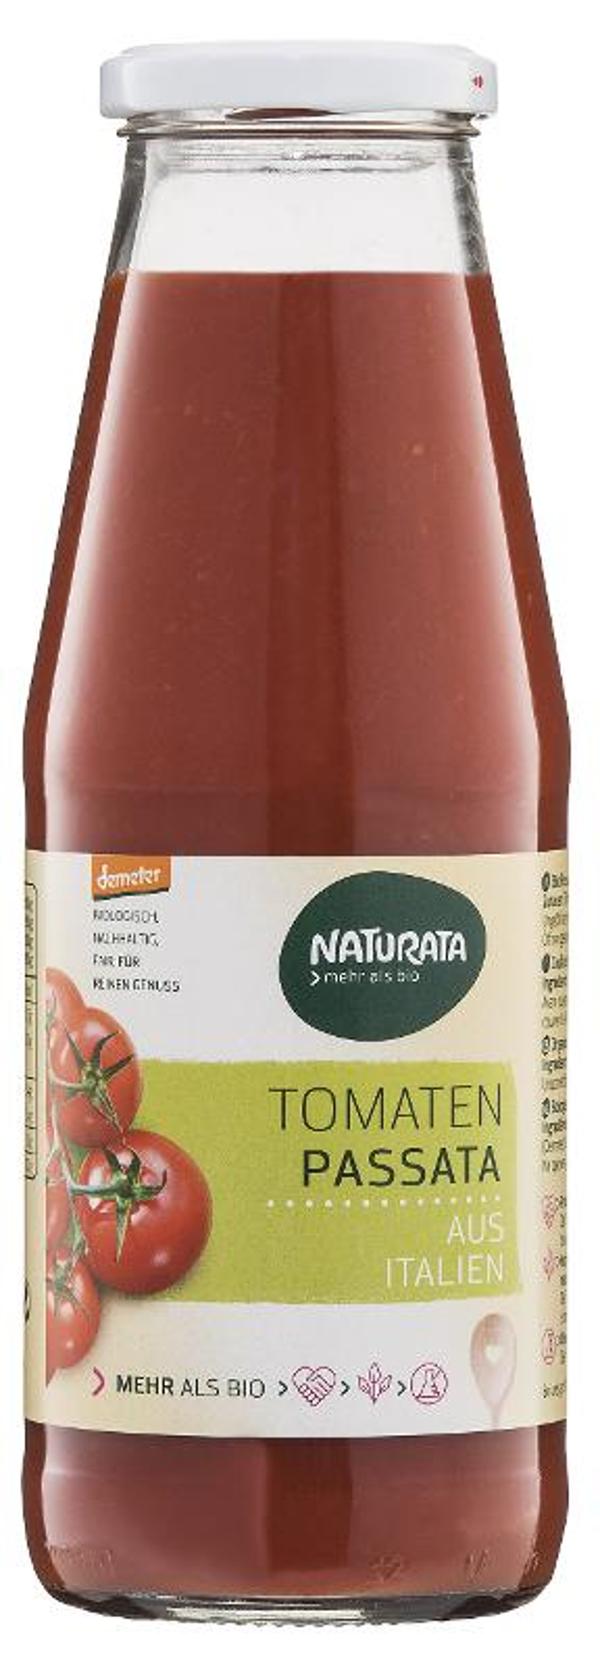 Produktfoto zu Passata Tomaten, 700g